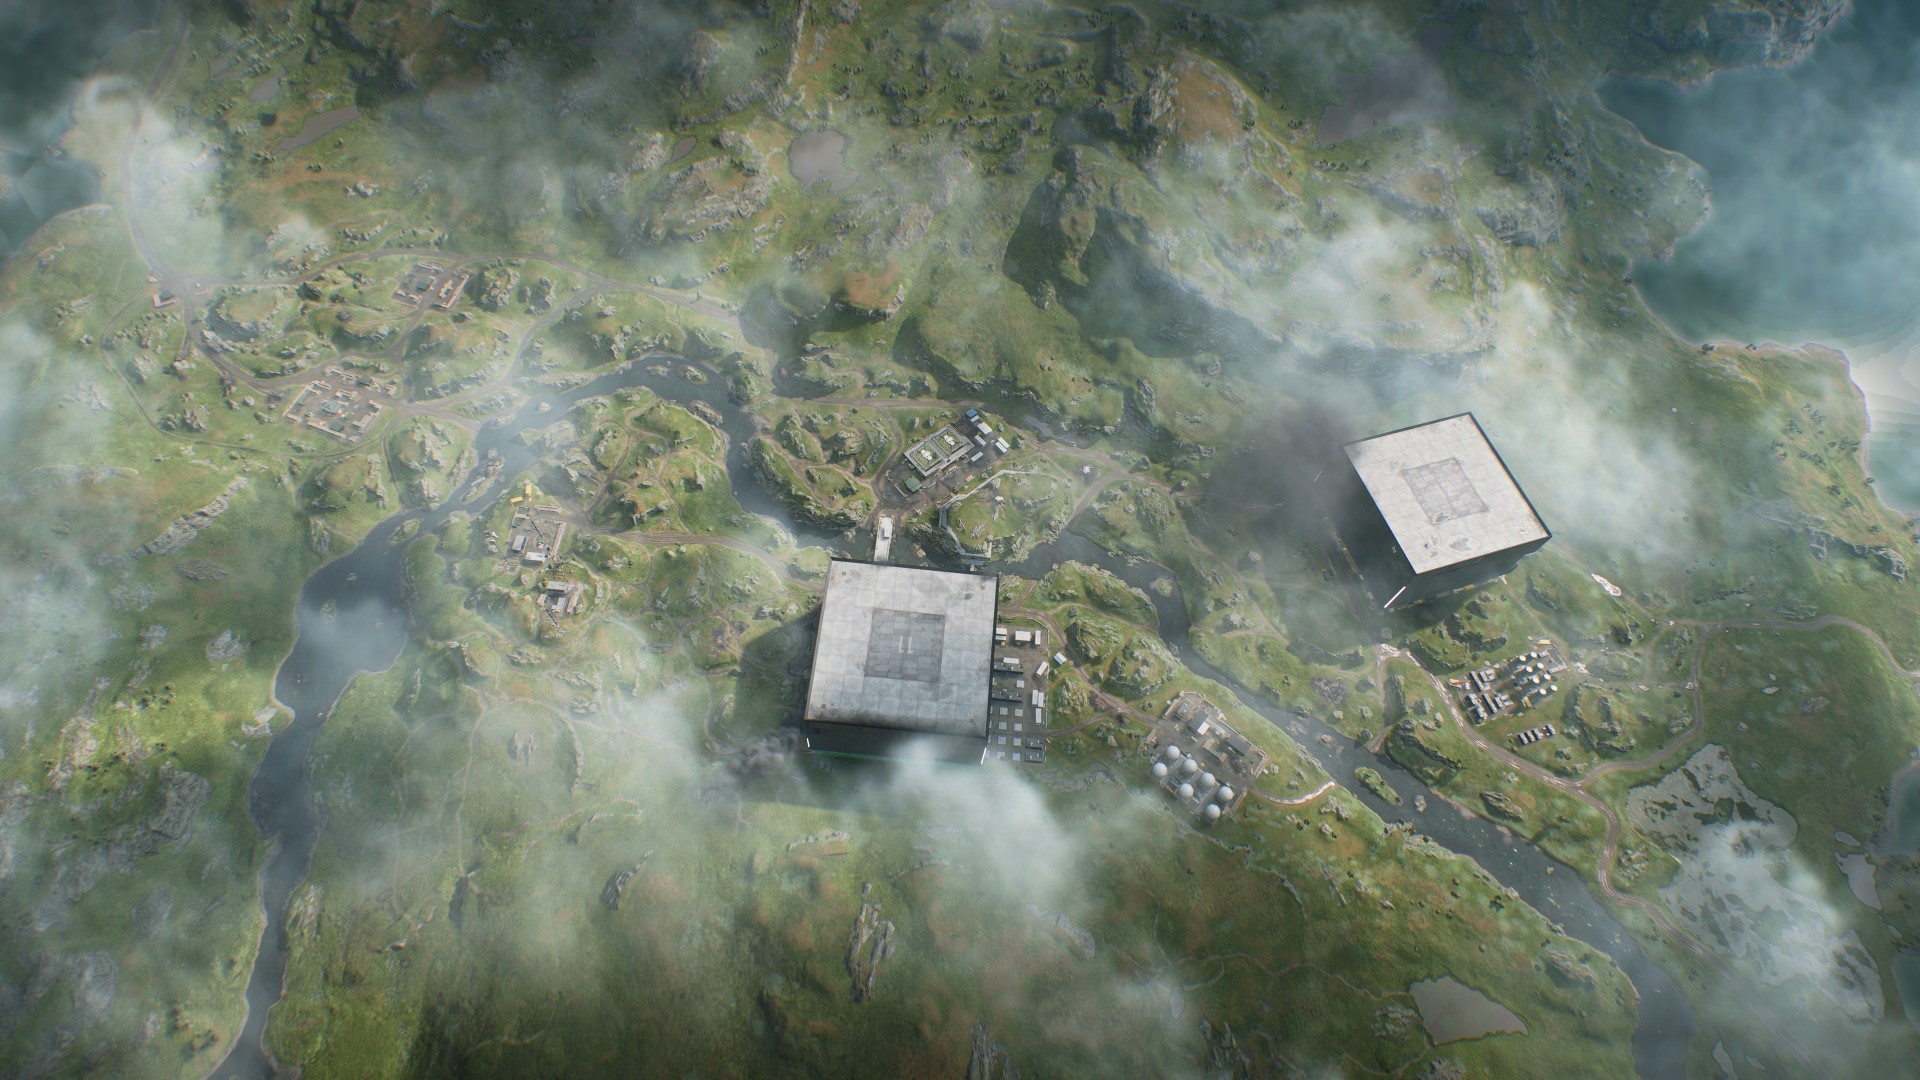 Battlefield 2042 saison 3 nouvelle carte pratique : une vue aérienne de la carte Fer de lance, avec deux grands bâtiments carrés sur les côtés opposés d'un ruisseau qui traverse la campagne rocheuse suédoise